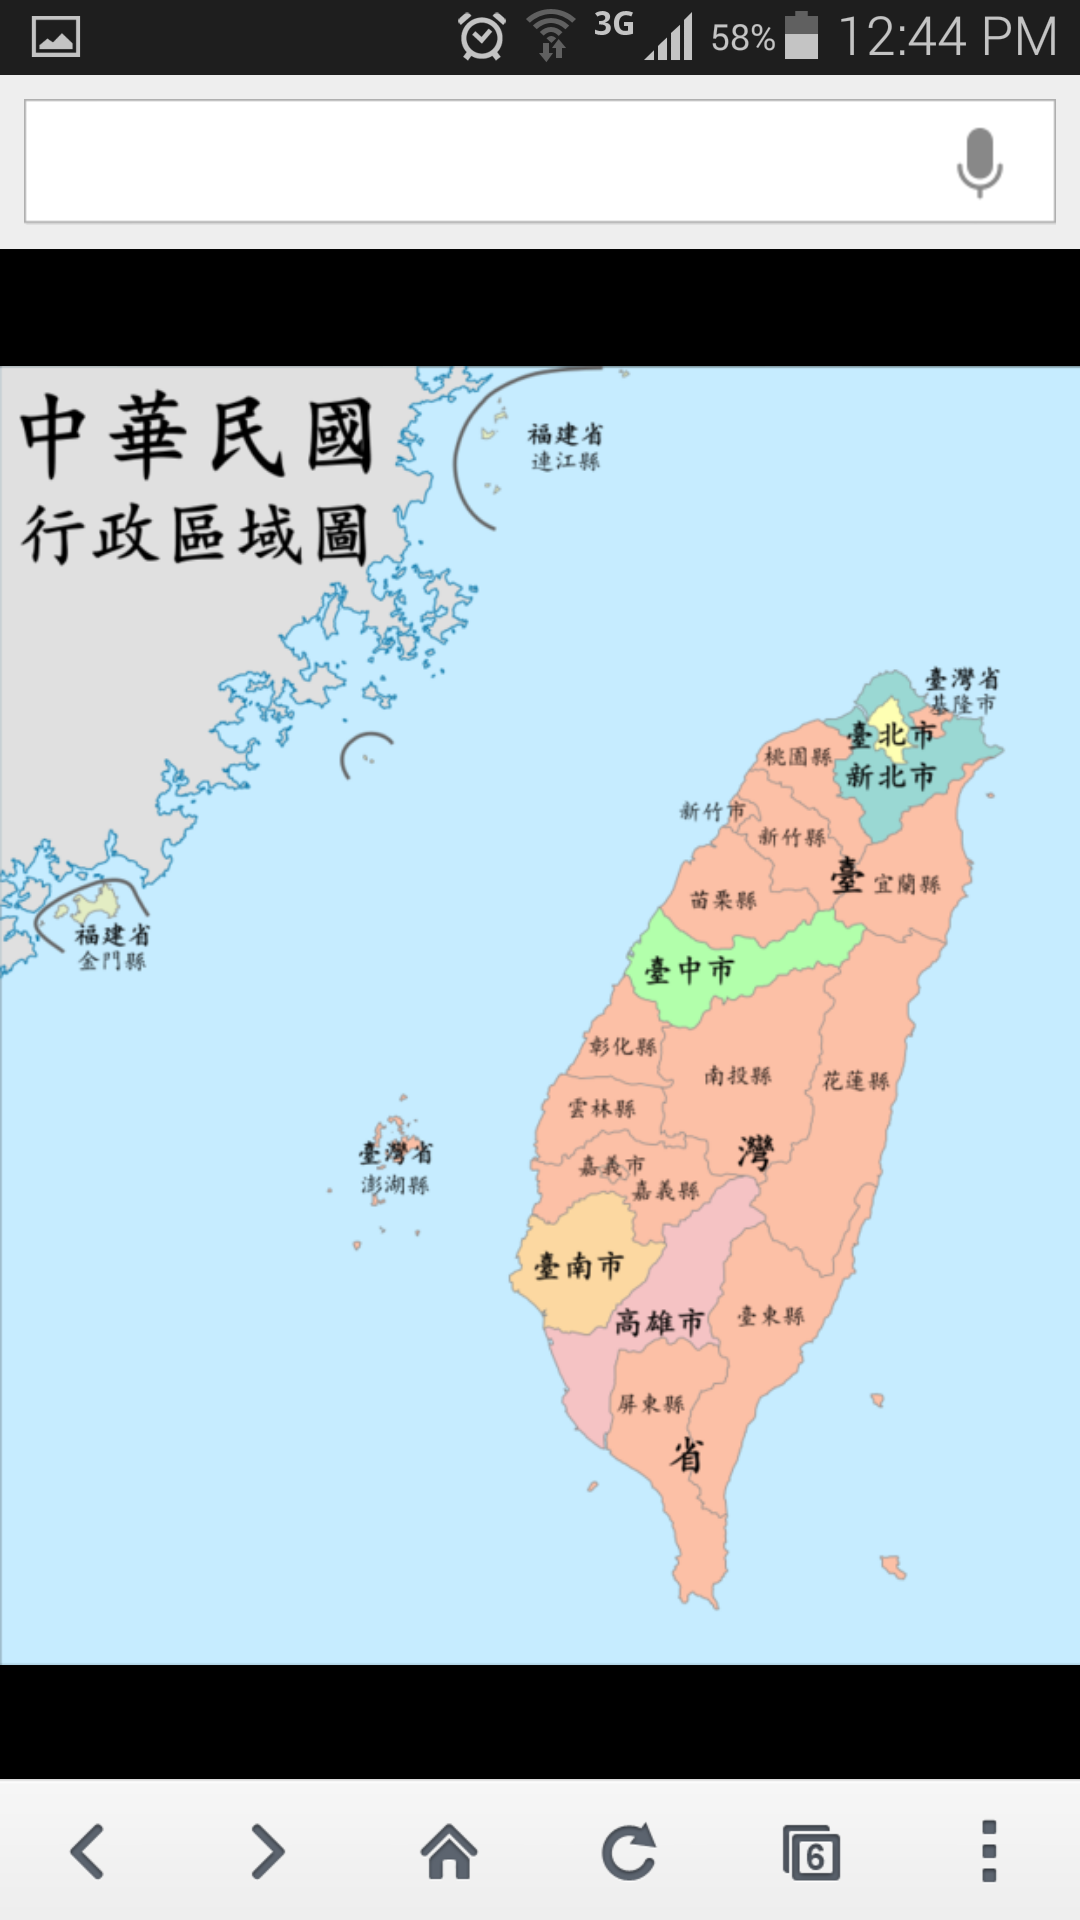 福建省的金门县和连江县是由台湾政府管辖的吗?